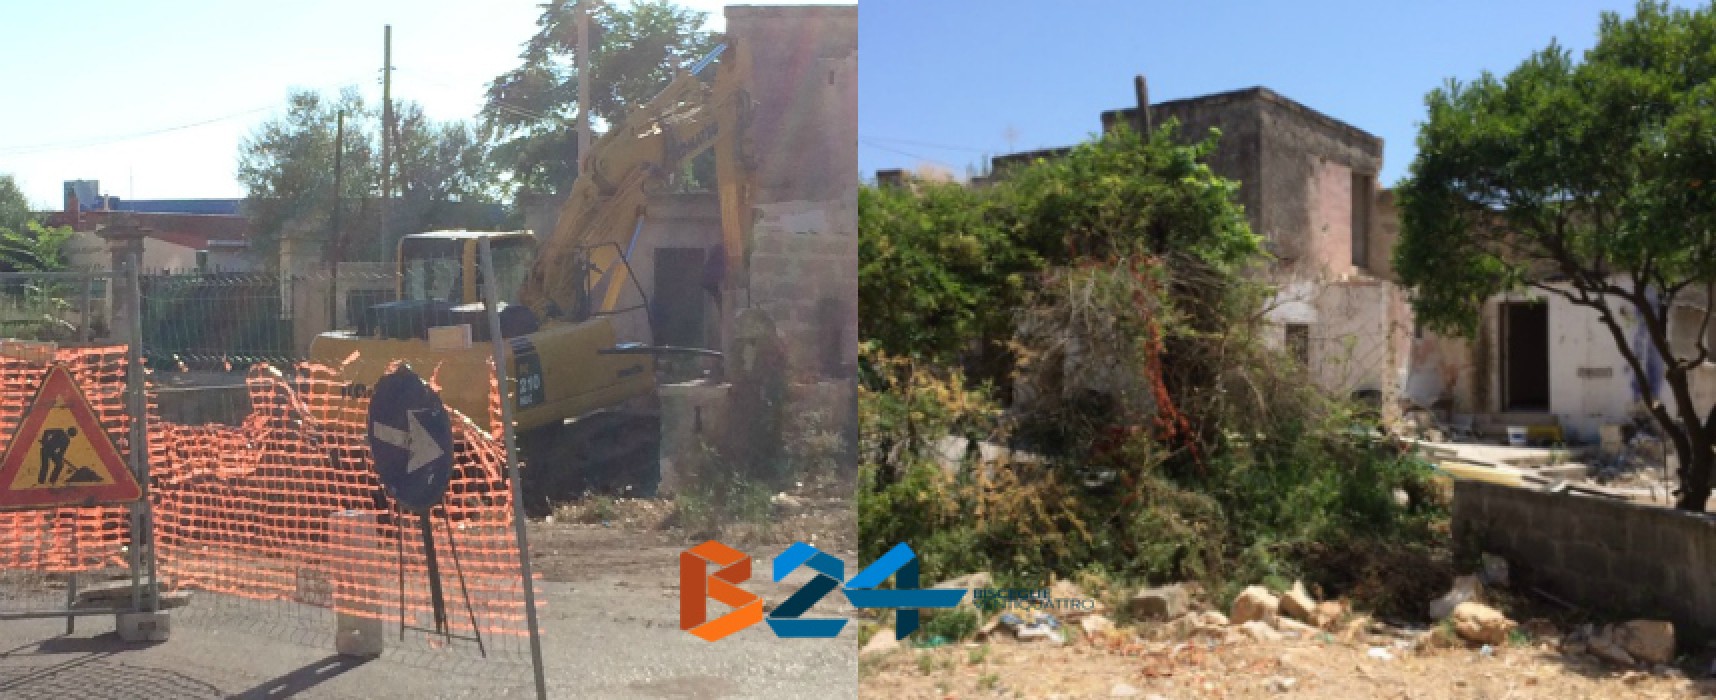 Demolito ultimo immobile espropriato nella zona 167, al via le ultime urbanizzazioni